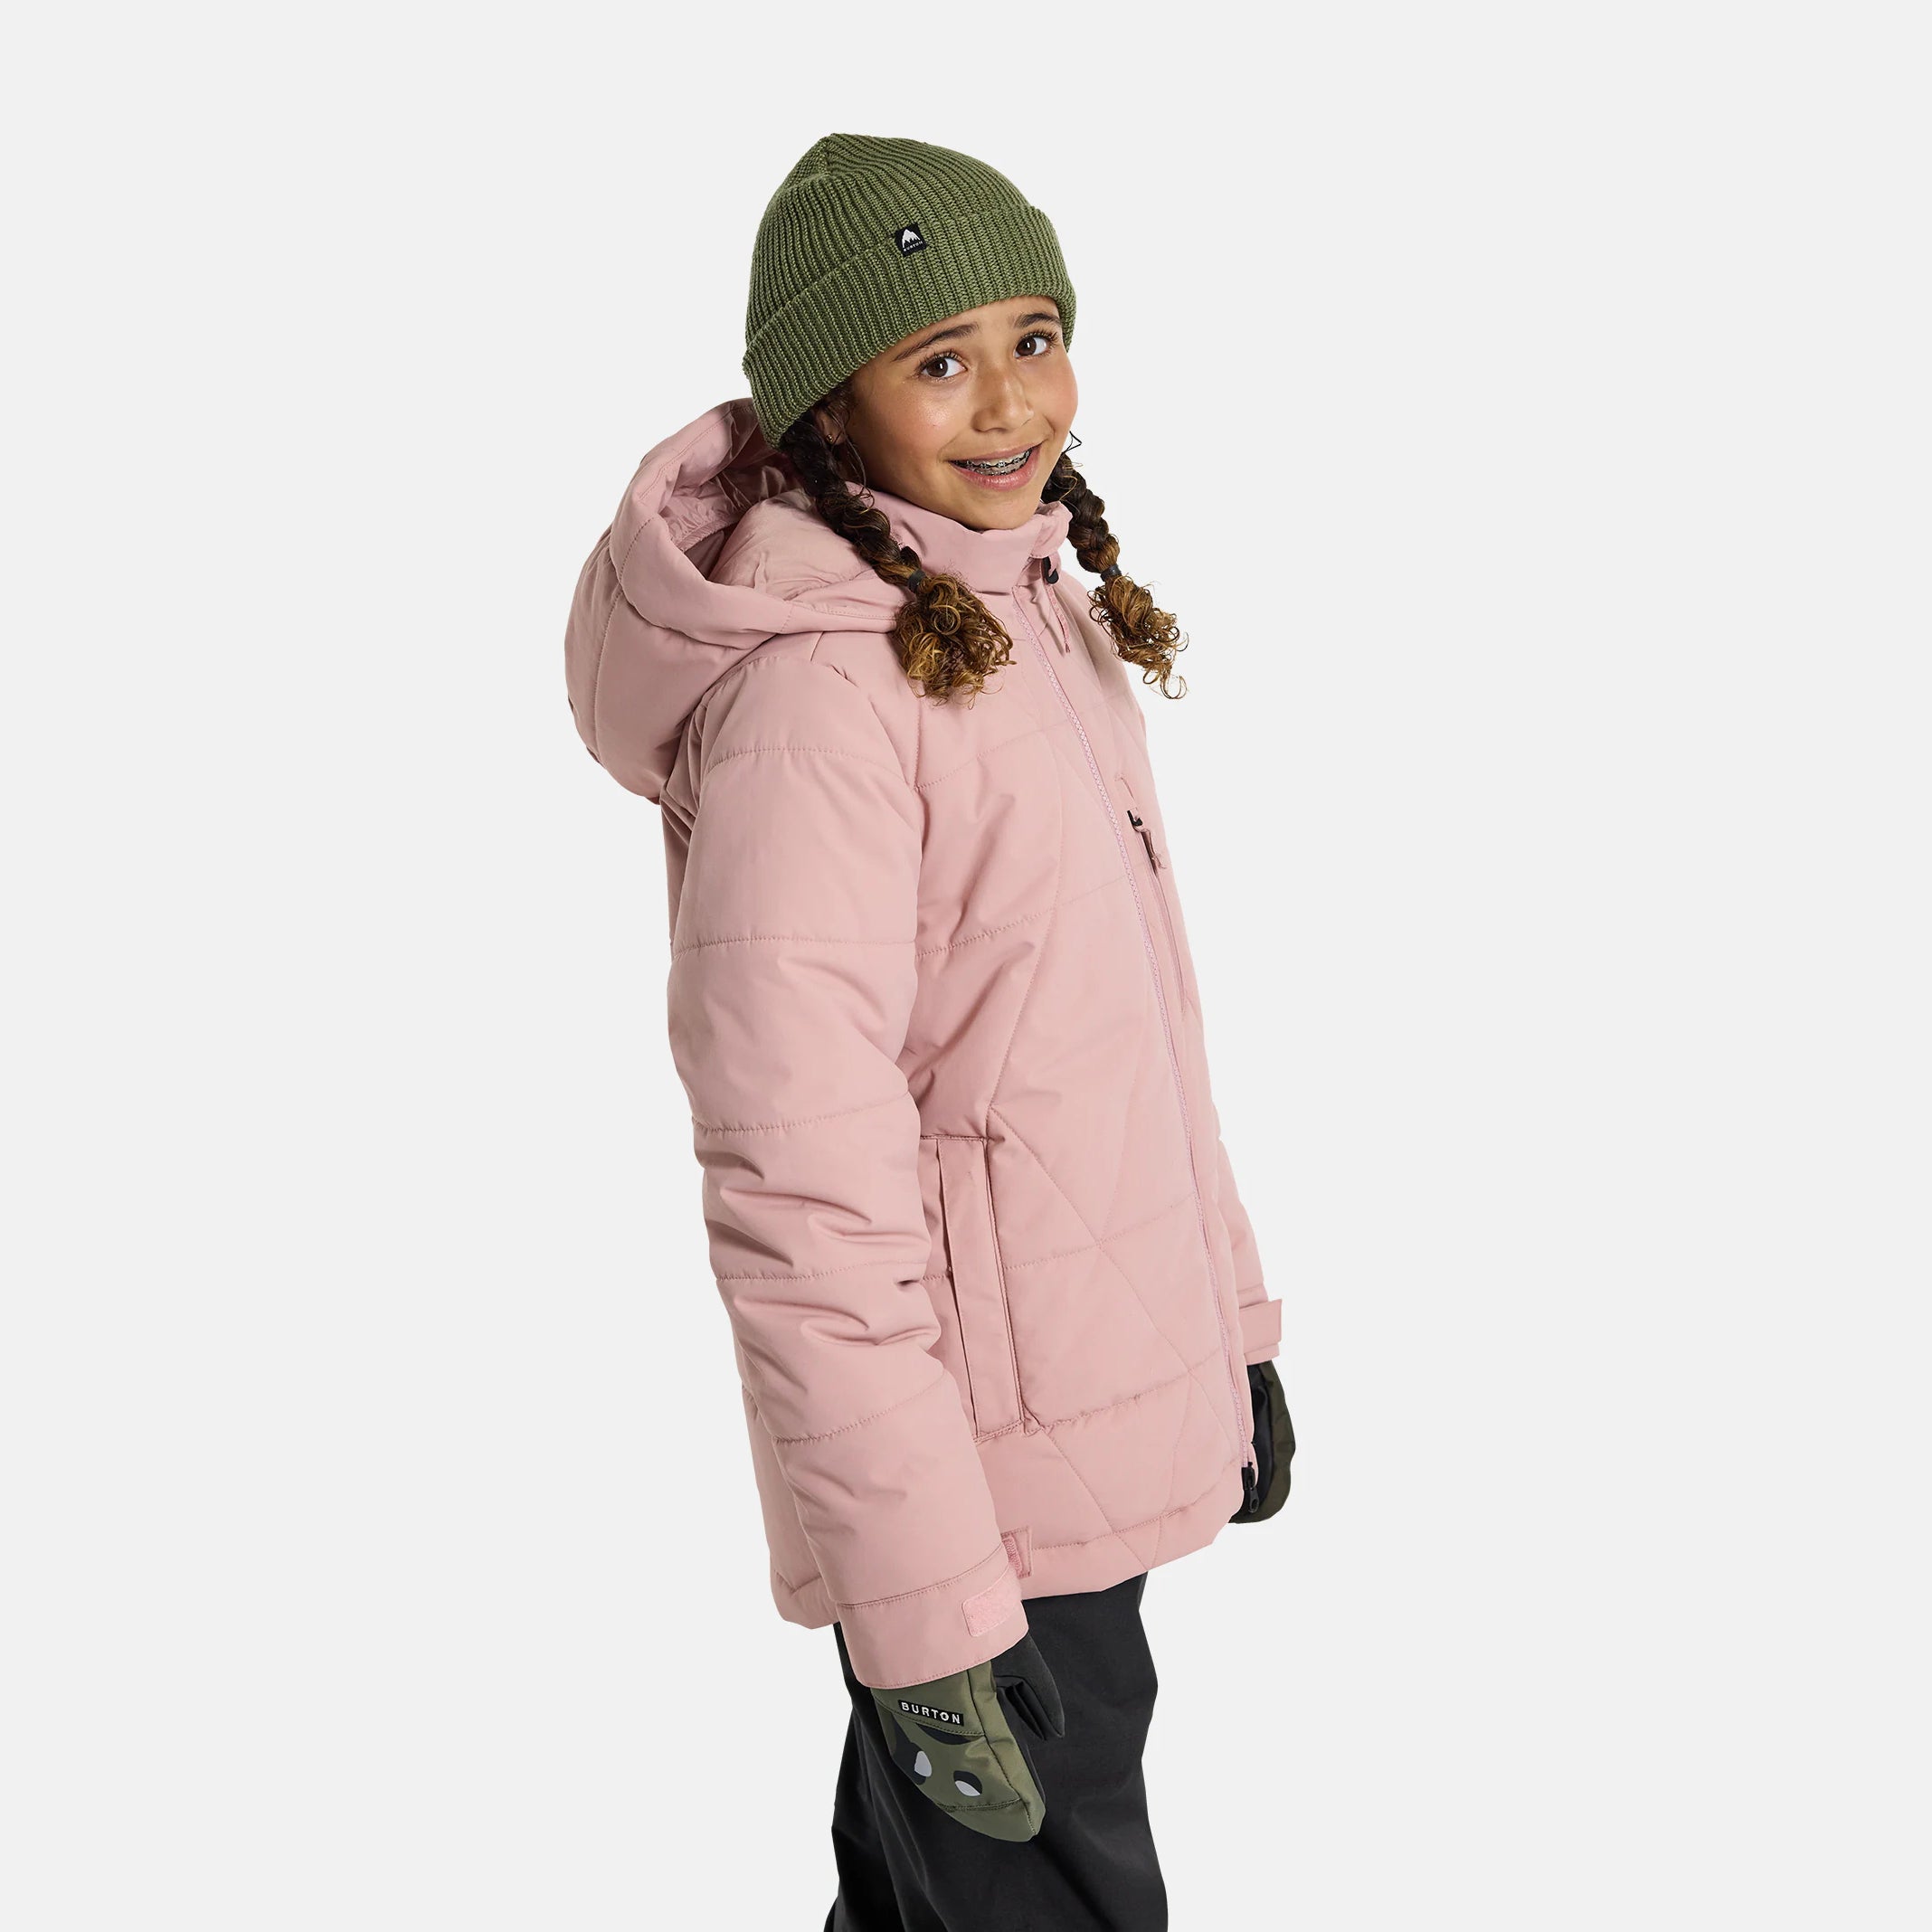 Girls Pink Snow Jacket